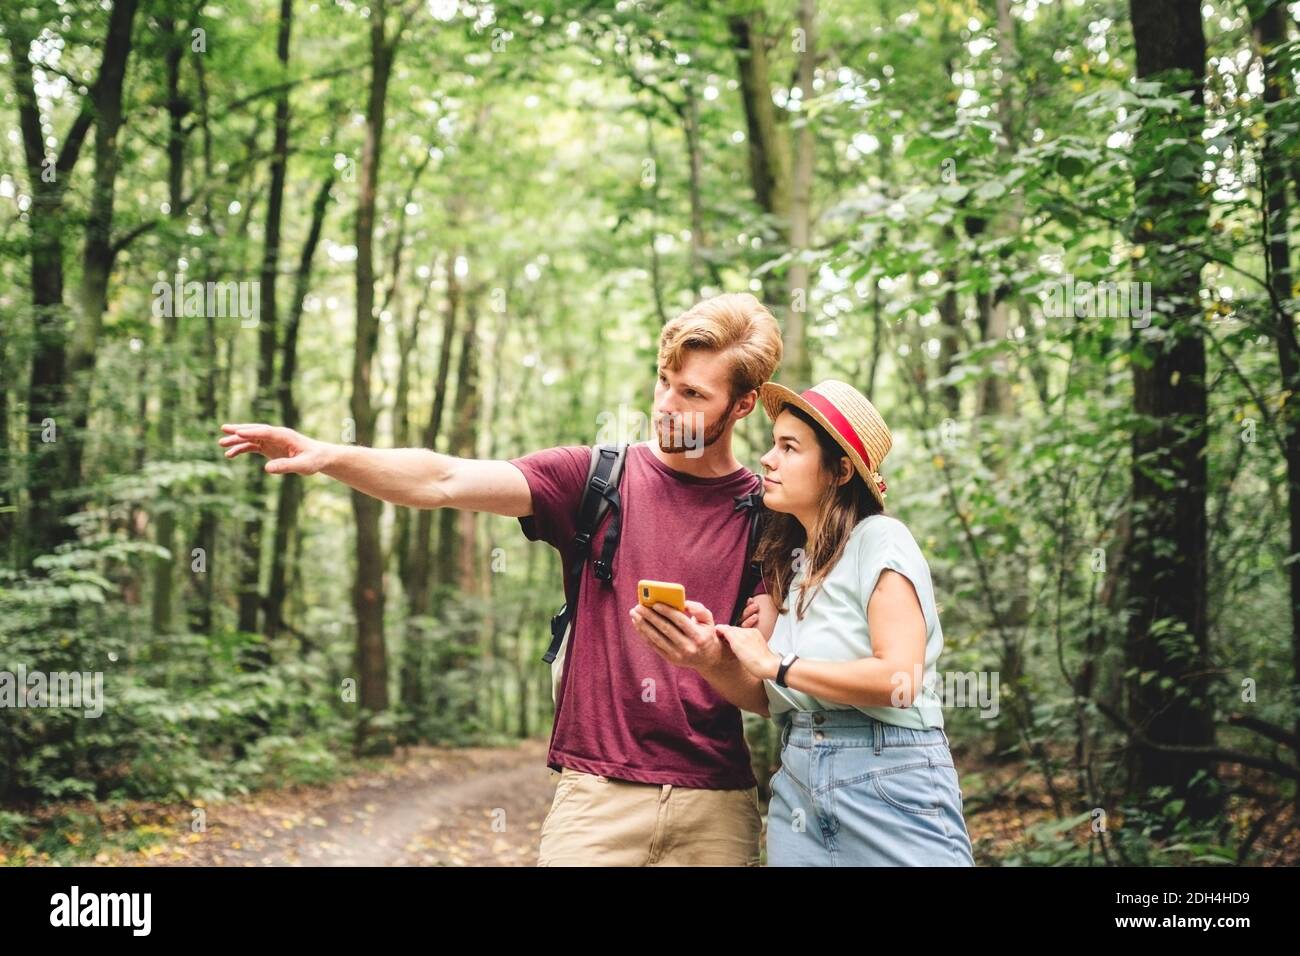 Paar Wandern und mit Karten-App auf dem Handy. Zwei Personen Wanderer auf  Handy suchen versuchen Route zu finden. Wandern im Wald, Klo  Stockfotografie - Alamy